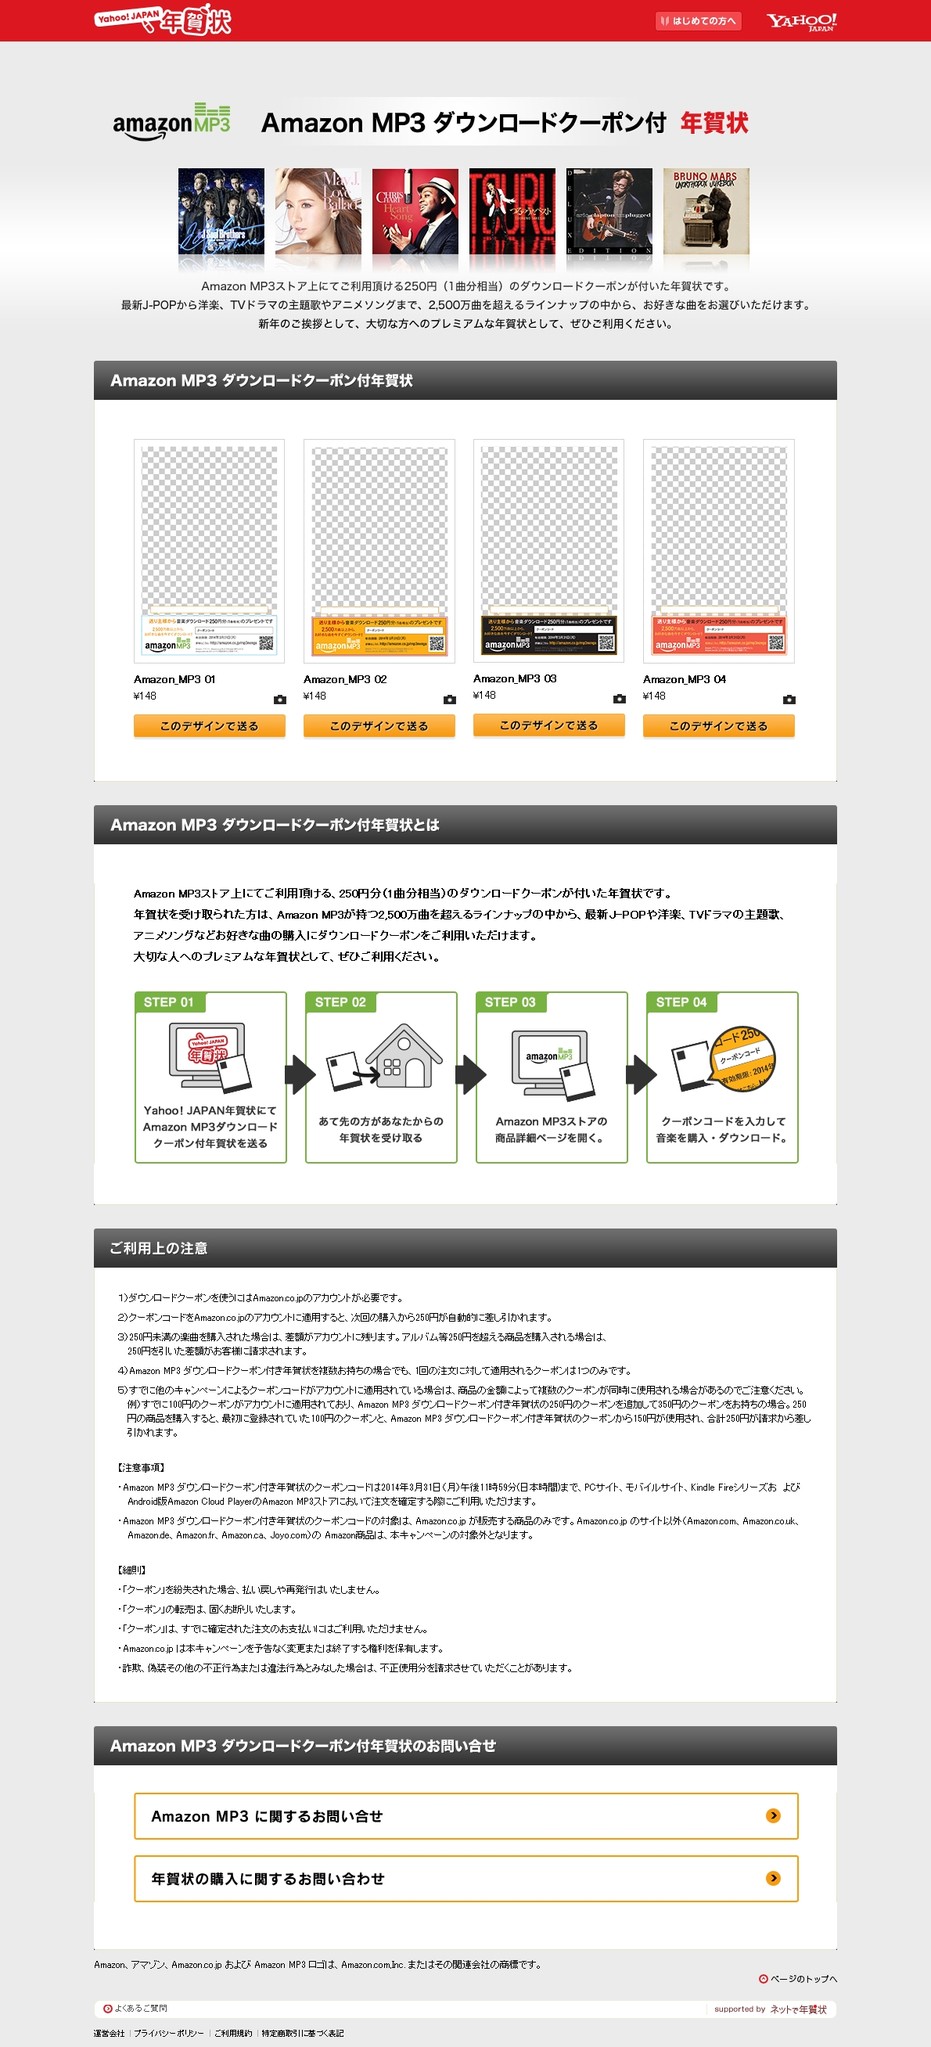 Amazon Co Jp Yahoo Japan年賀状 およびウェブポにて Amazon Mp3ダウンロードクーポン付き年賀状 を発売開始 アマゾン ジャパン合同会社のプレスリリース